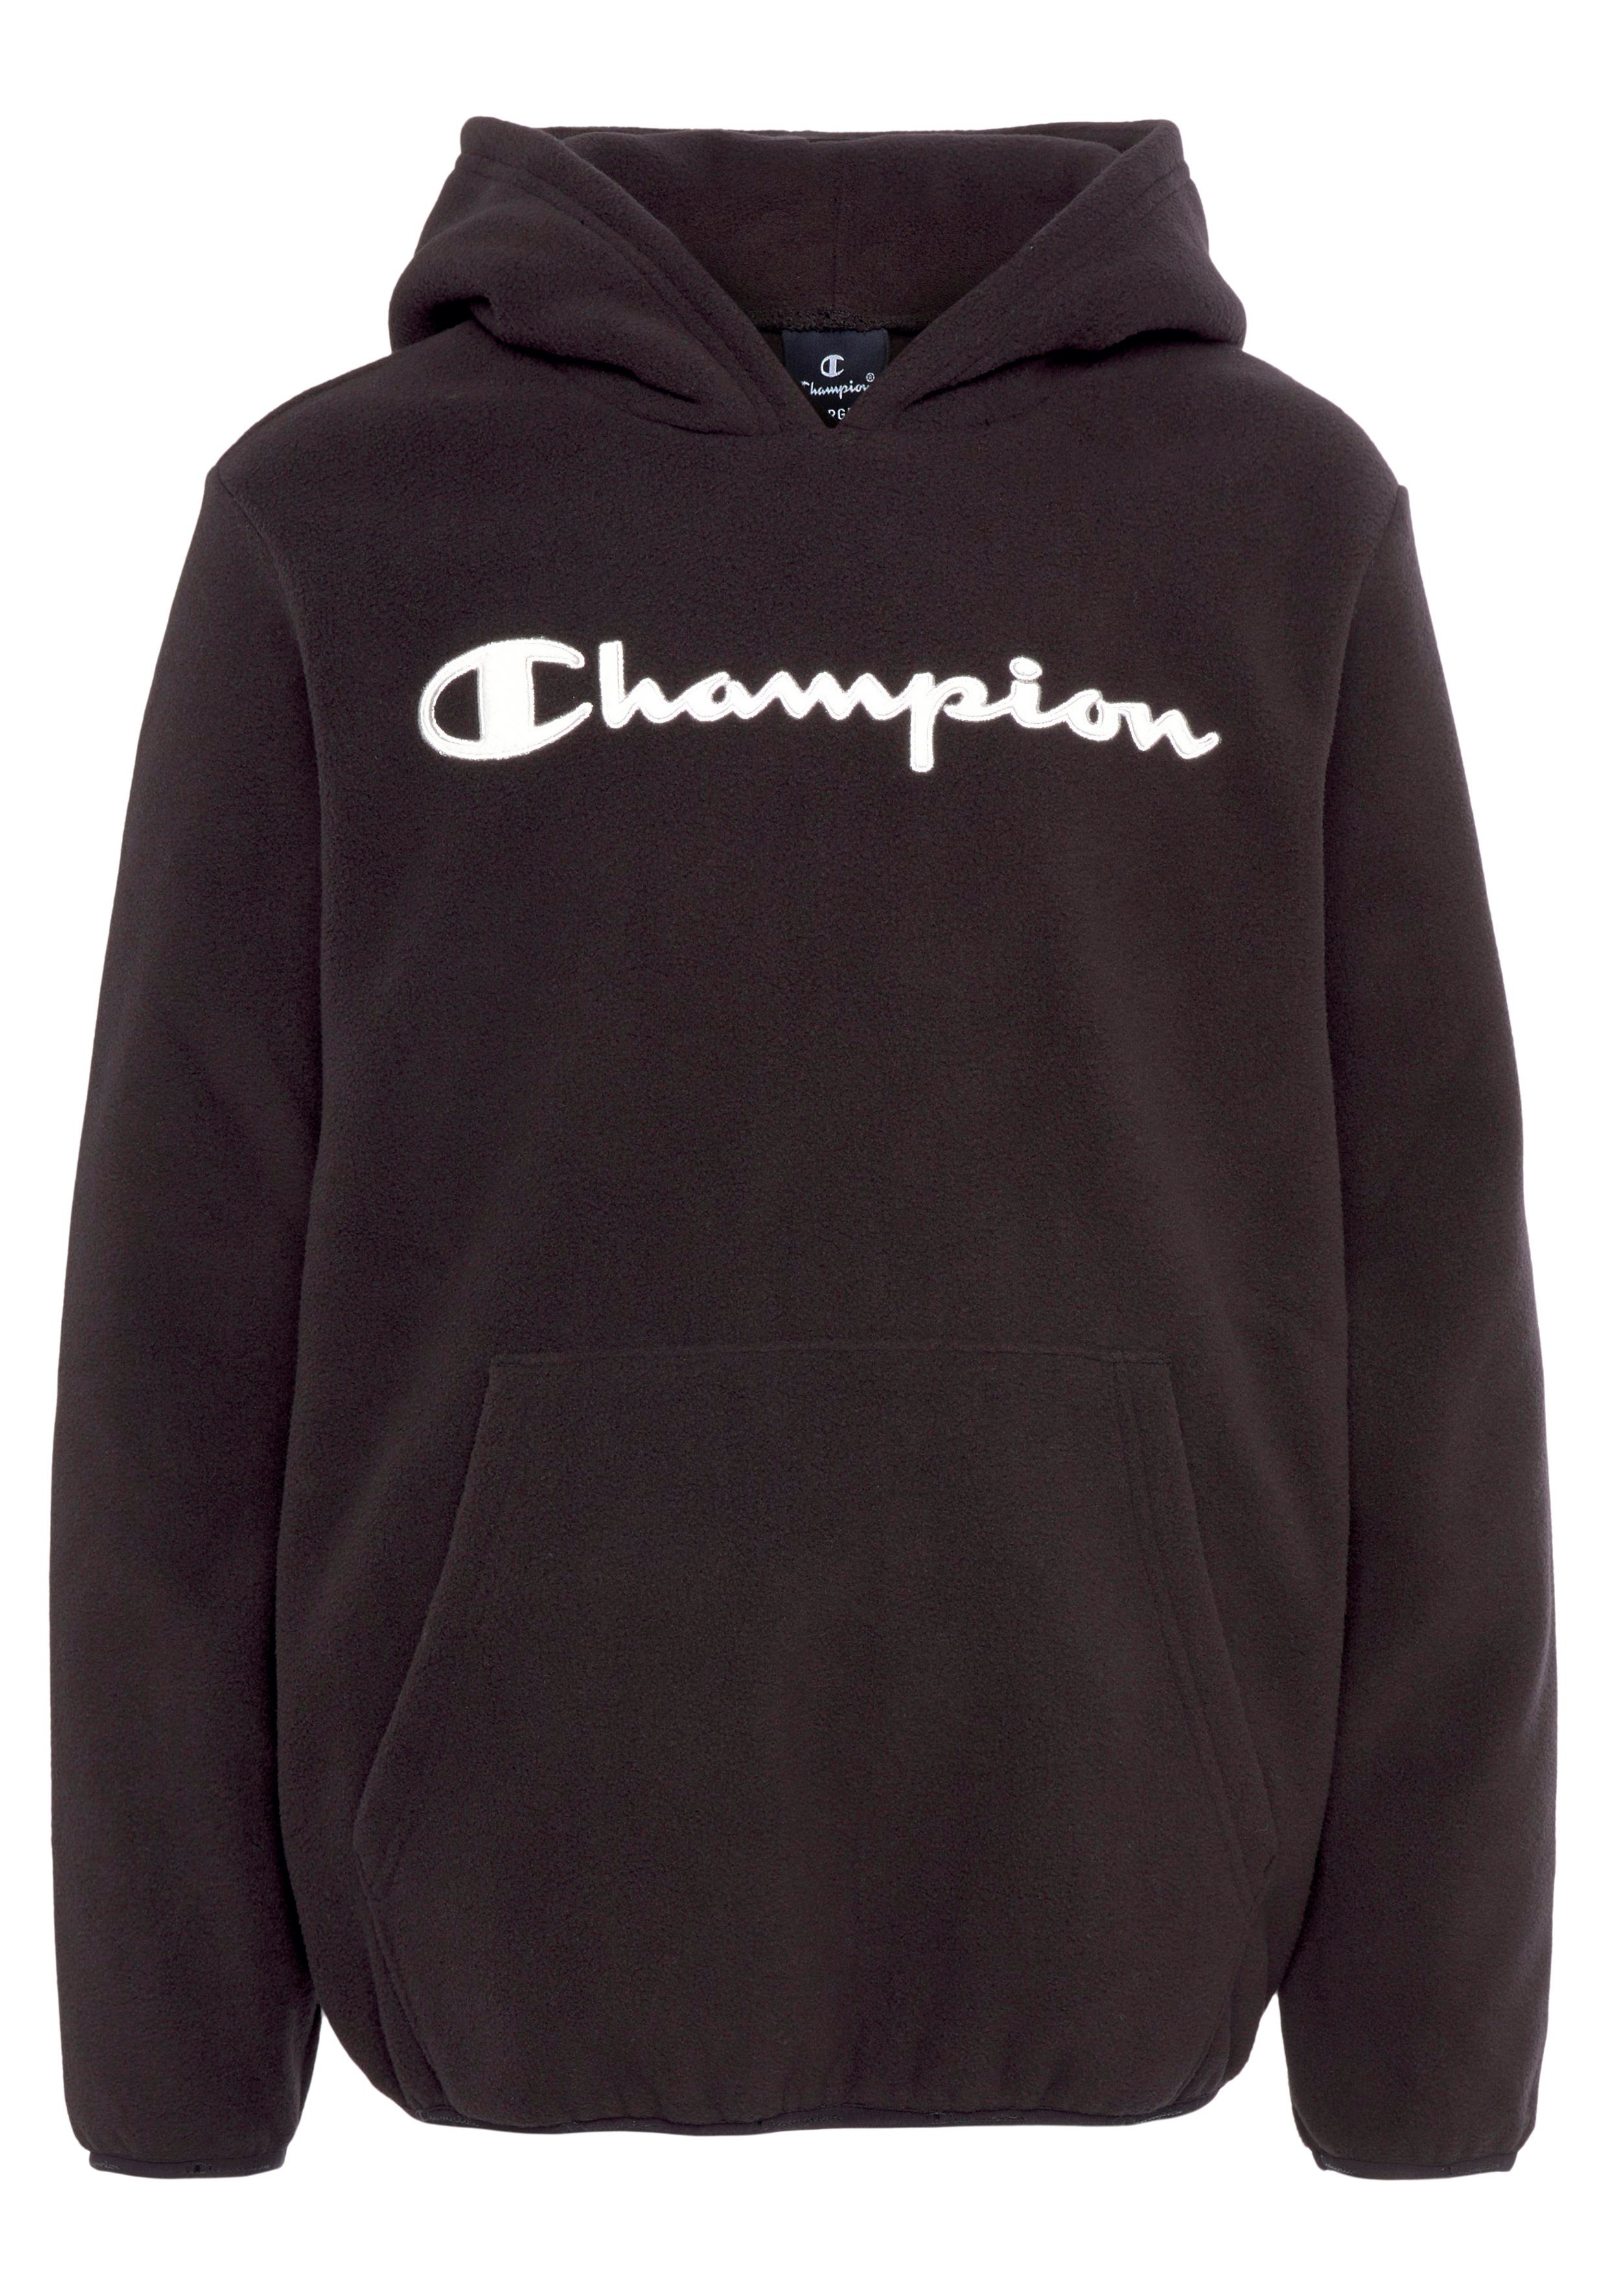 Champion Sweatshirt für Kinder, Elastische und Ärmelsaum Bündchen am Saum